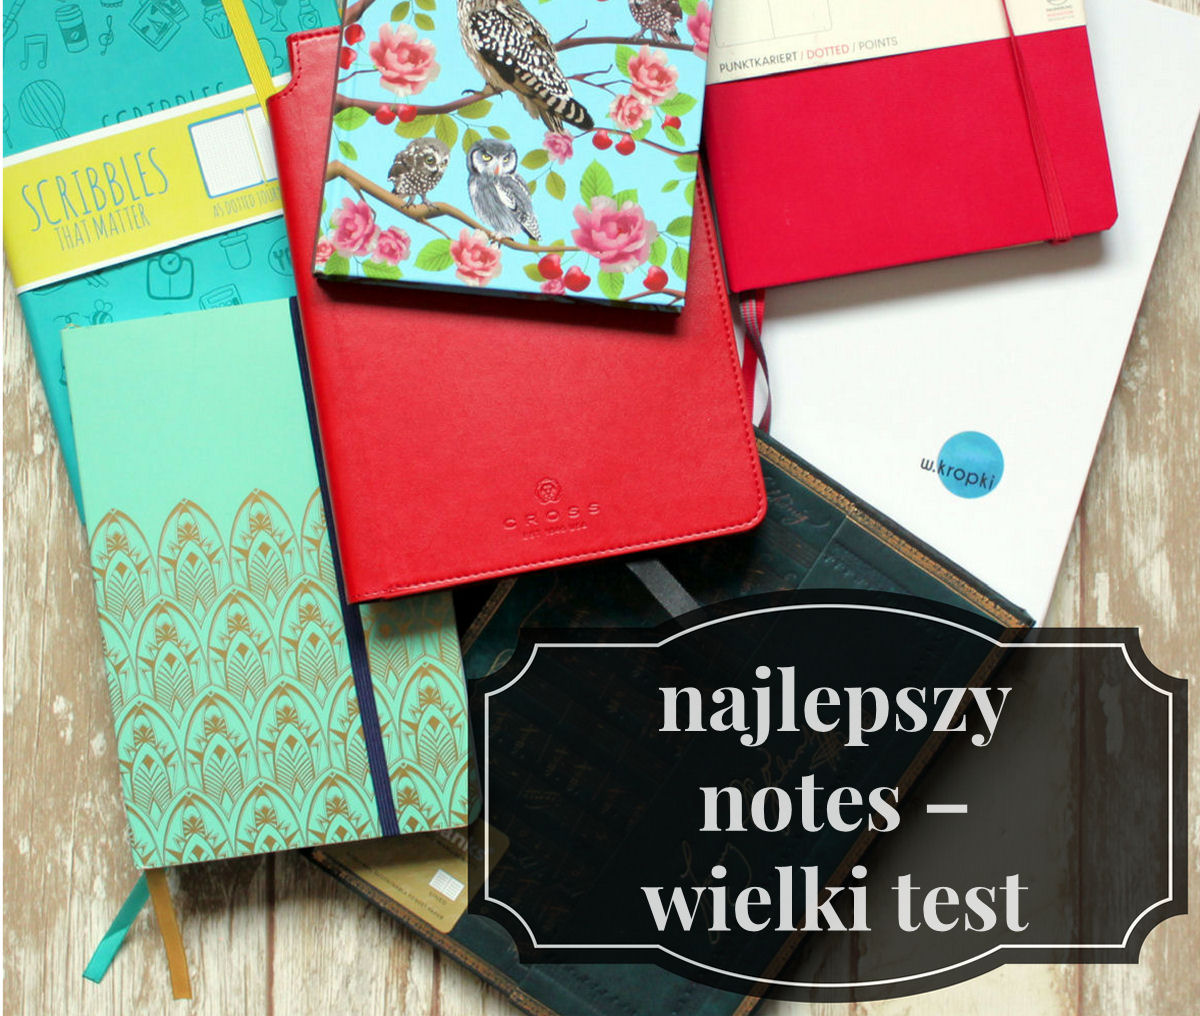 sierysuje.pl najlepszy notes na bullet journal